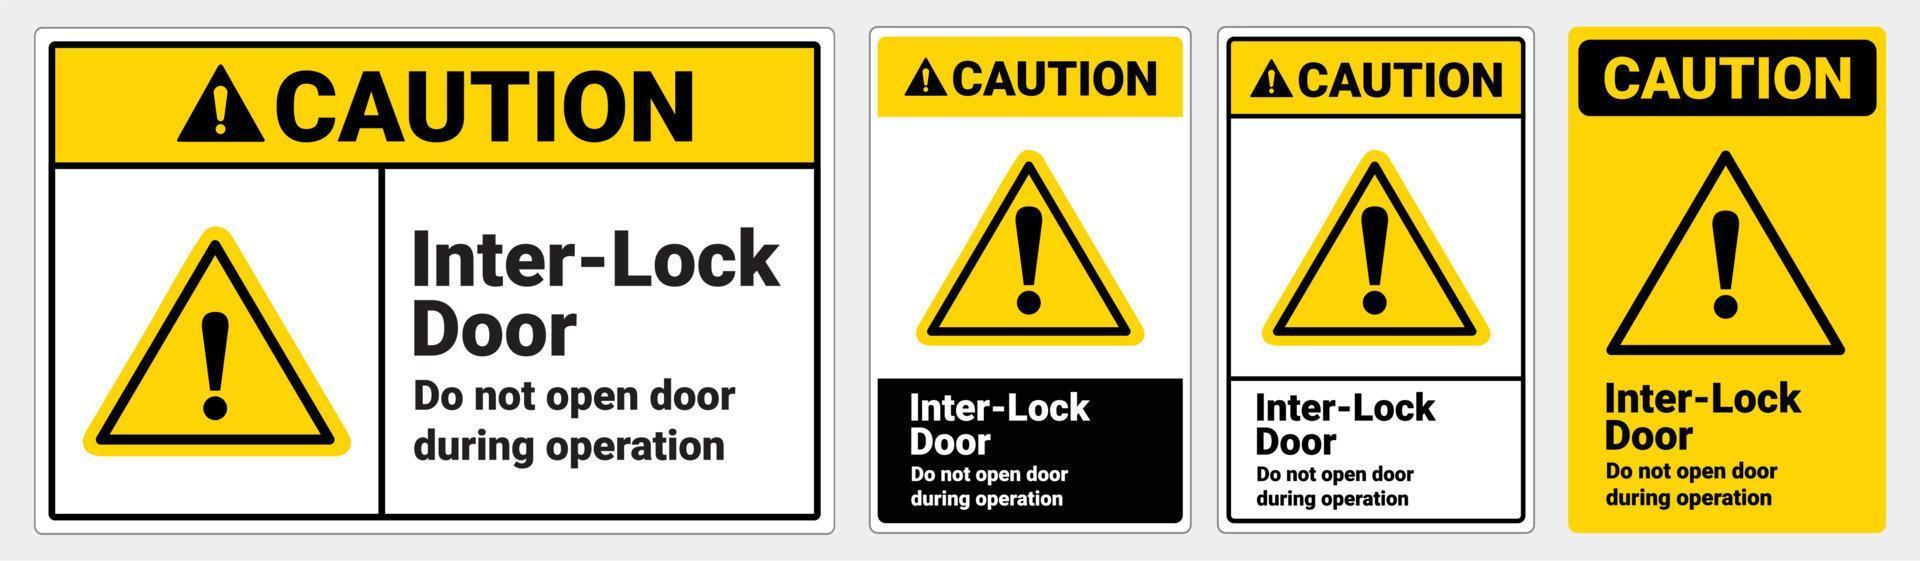 segnaletica di sicurezza attenzione Le porte di interblocco non aprono la porta durante il funzionamento. formati standard ansi e osha vettore